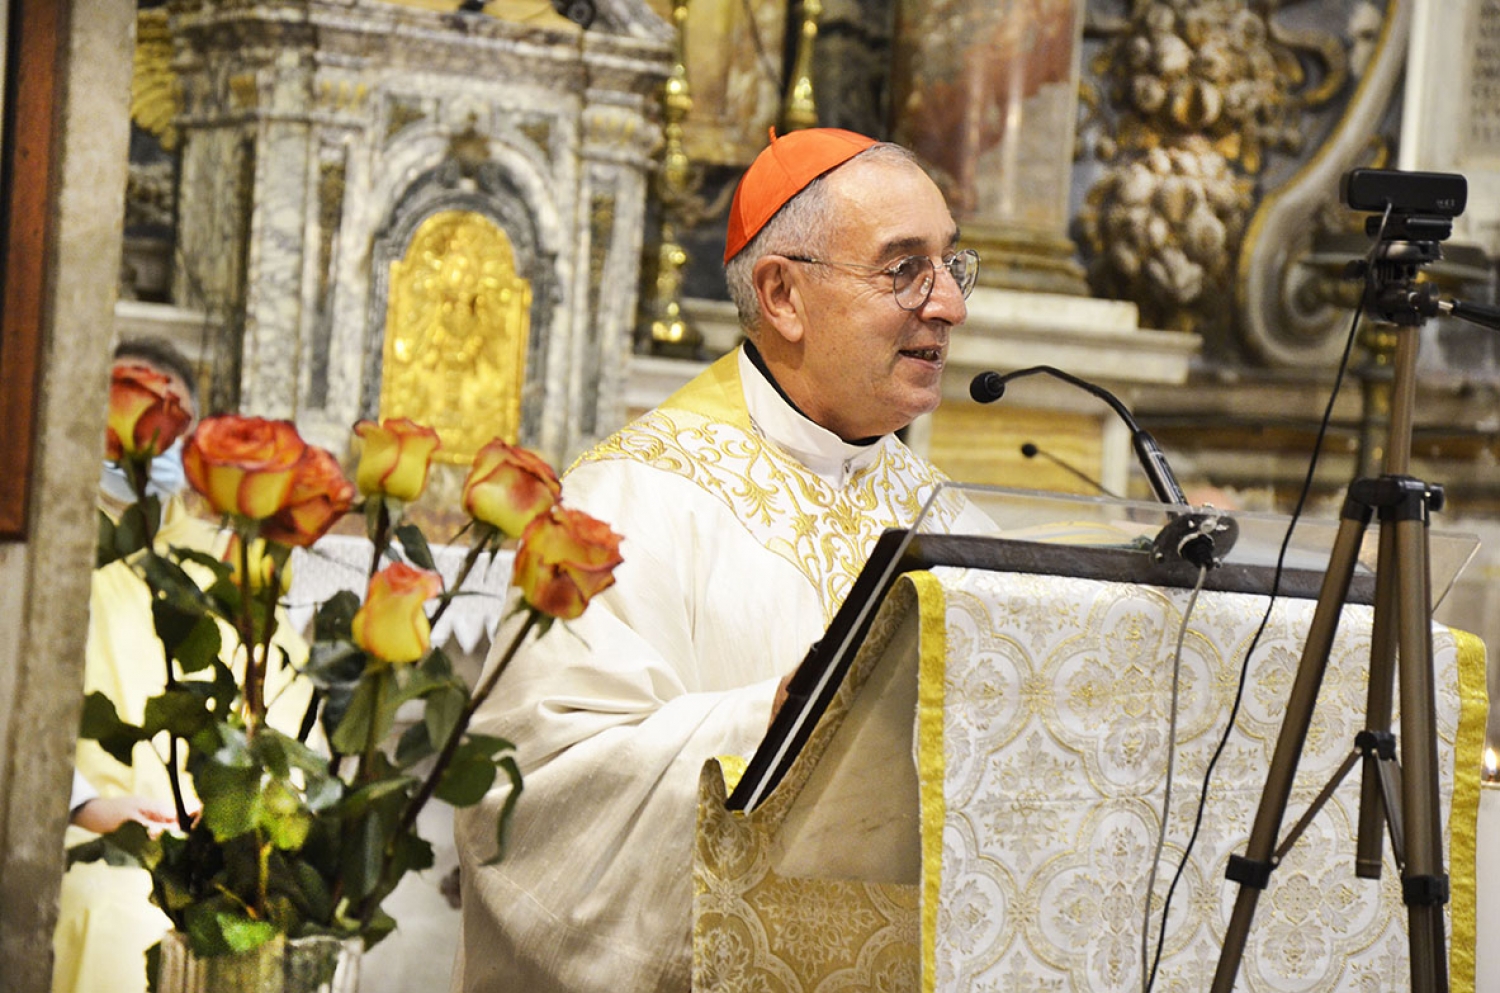 De Donatis celebra i 550 anni di Santa Maria della Consolazione: “La cura del desiderio”